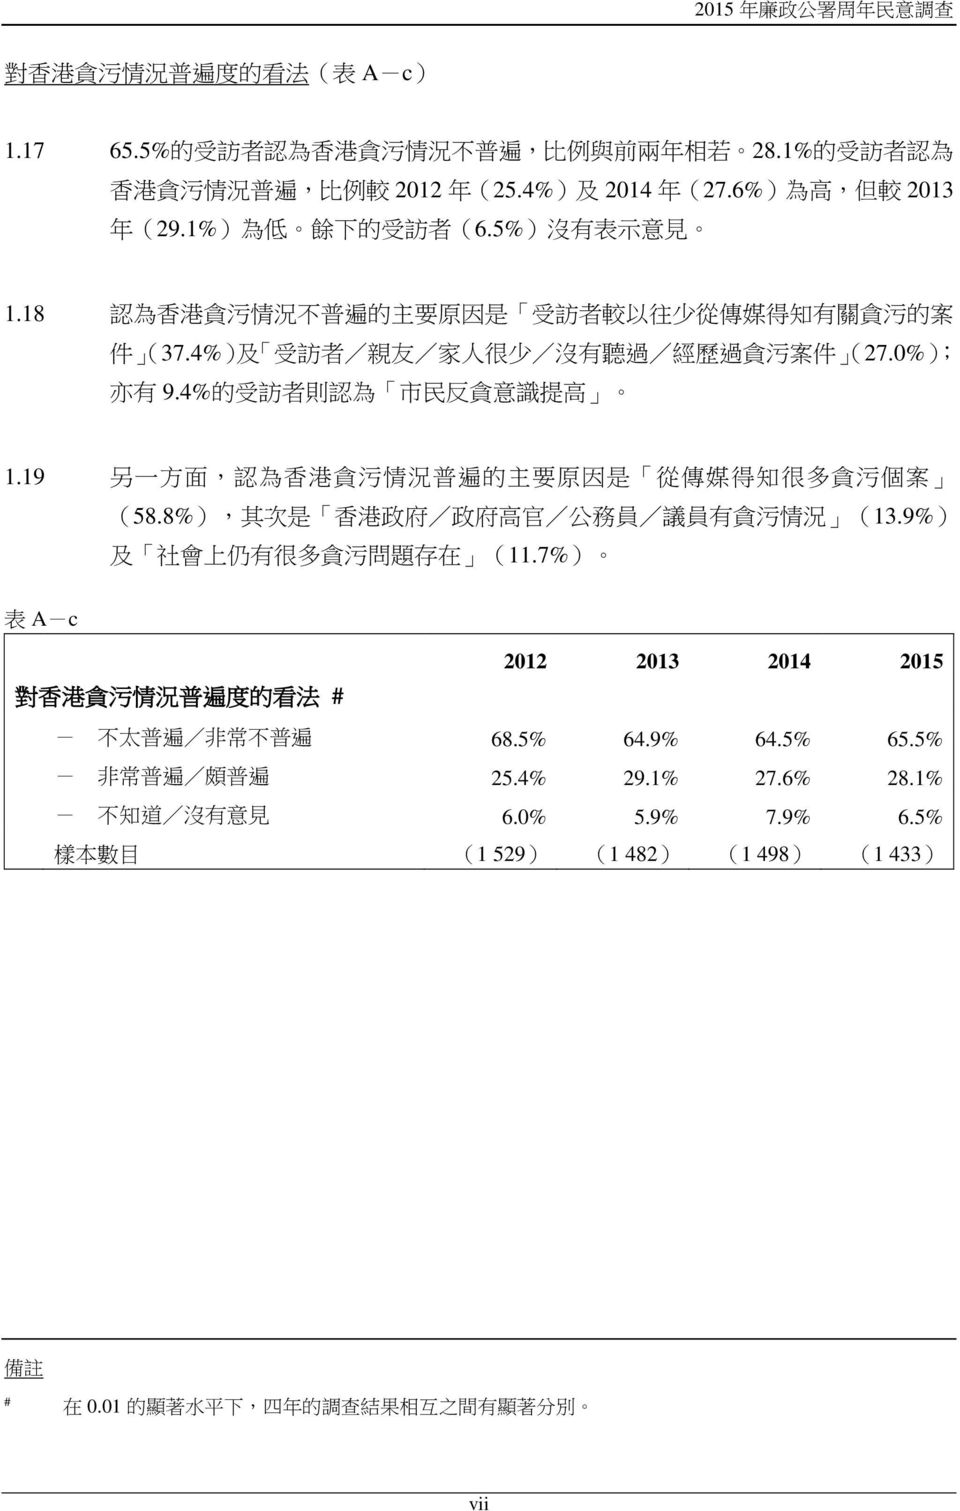 4% 的 受 訪 者 則 認 為 市 民 反 貪 意 識 提 高 1.19 另 一 方 面, 認 為 香 港 貪 污 情 況 普 遍 的 主 要 原 因 是 從 傳 媒 得 知 很 多 貪 污 個 案 (58.8%), 其 次 是 香 港 政 府 / 政 府 高 官 / 公 務 員 / 議 員 有 貪 污 情 況 (13.9%) 及 社 會 上 仍 有 很 多 貪 污 問 題 存 在 (11.